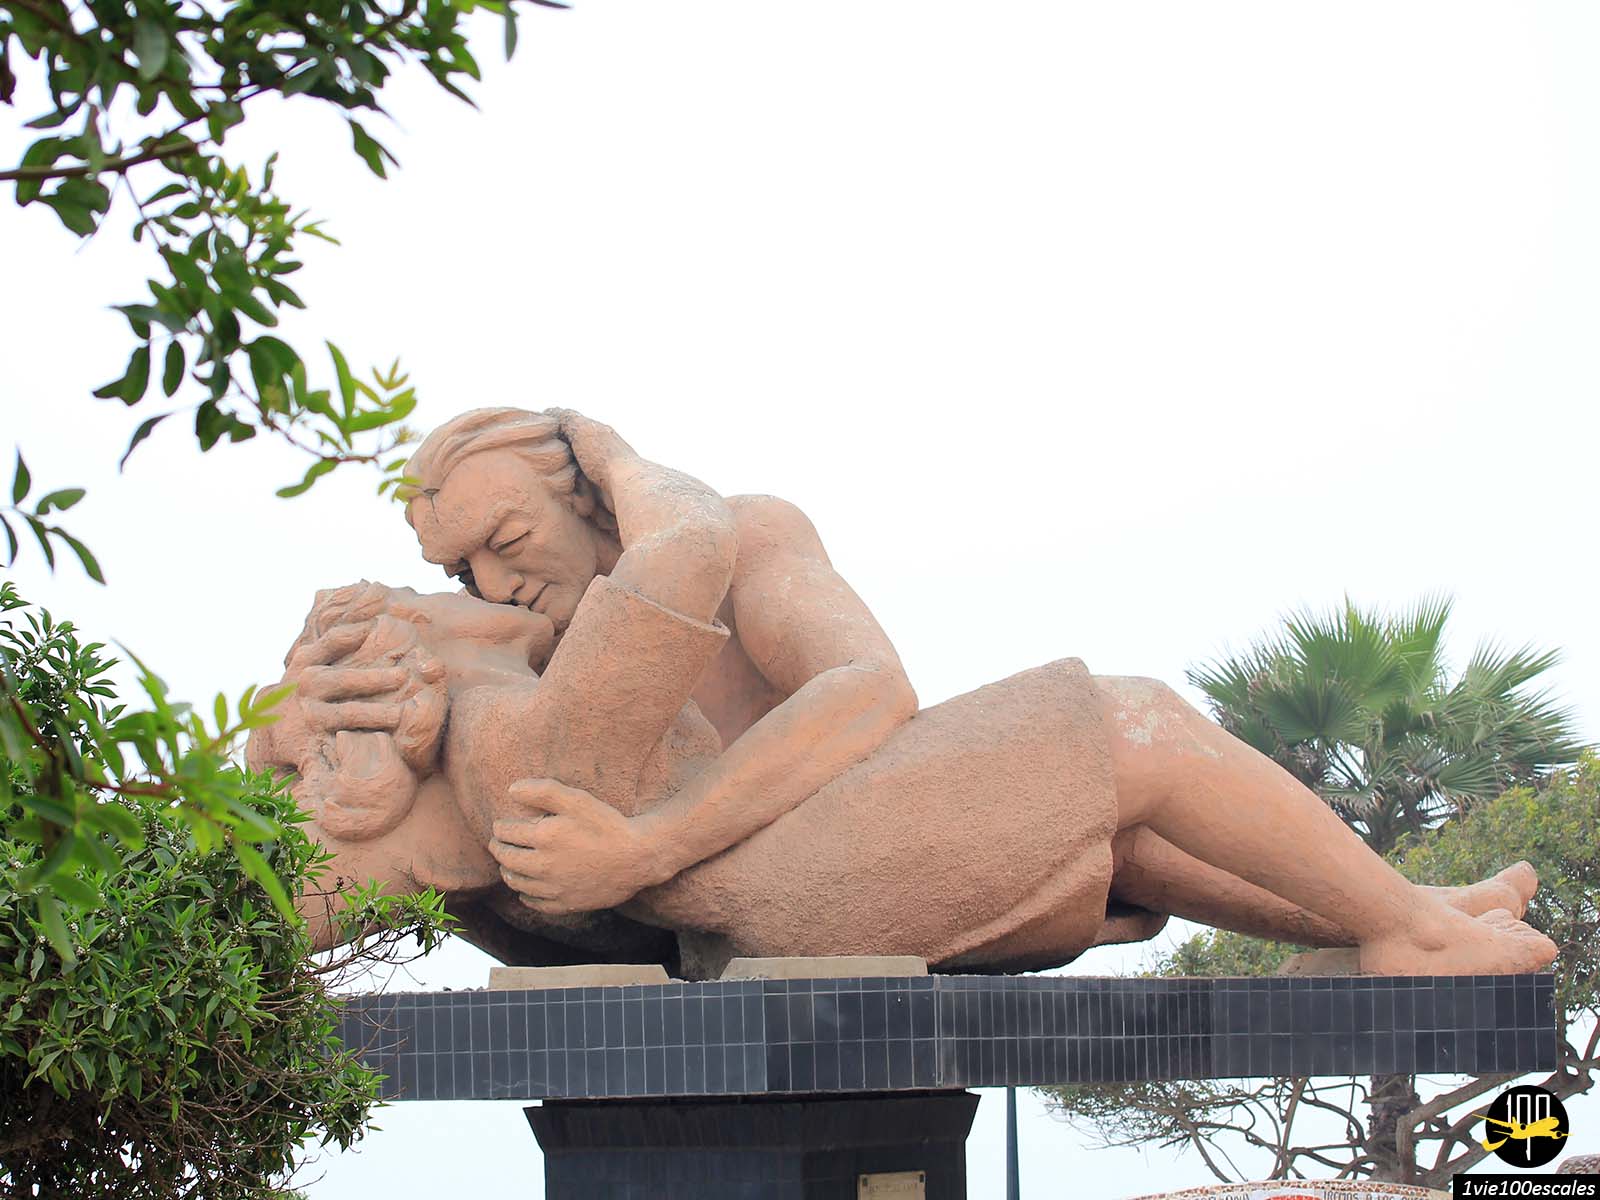 Au cœur du parc, vous trouverez une sculpture nommée El Beso (Le Baiser) représentant deux amoureux en pleine étreinte romantique